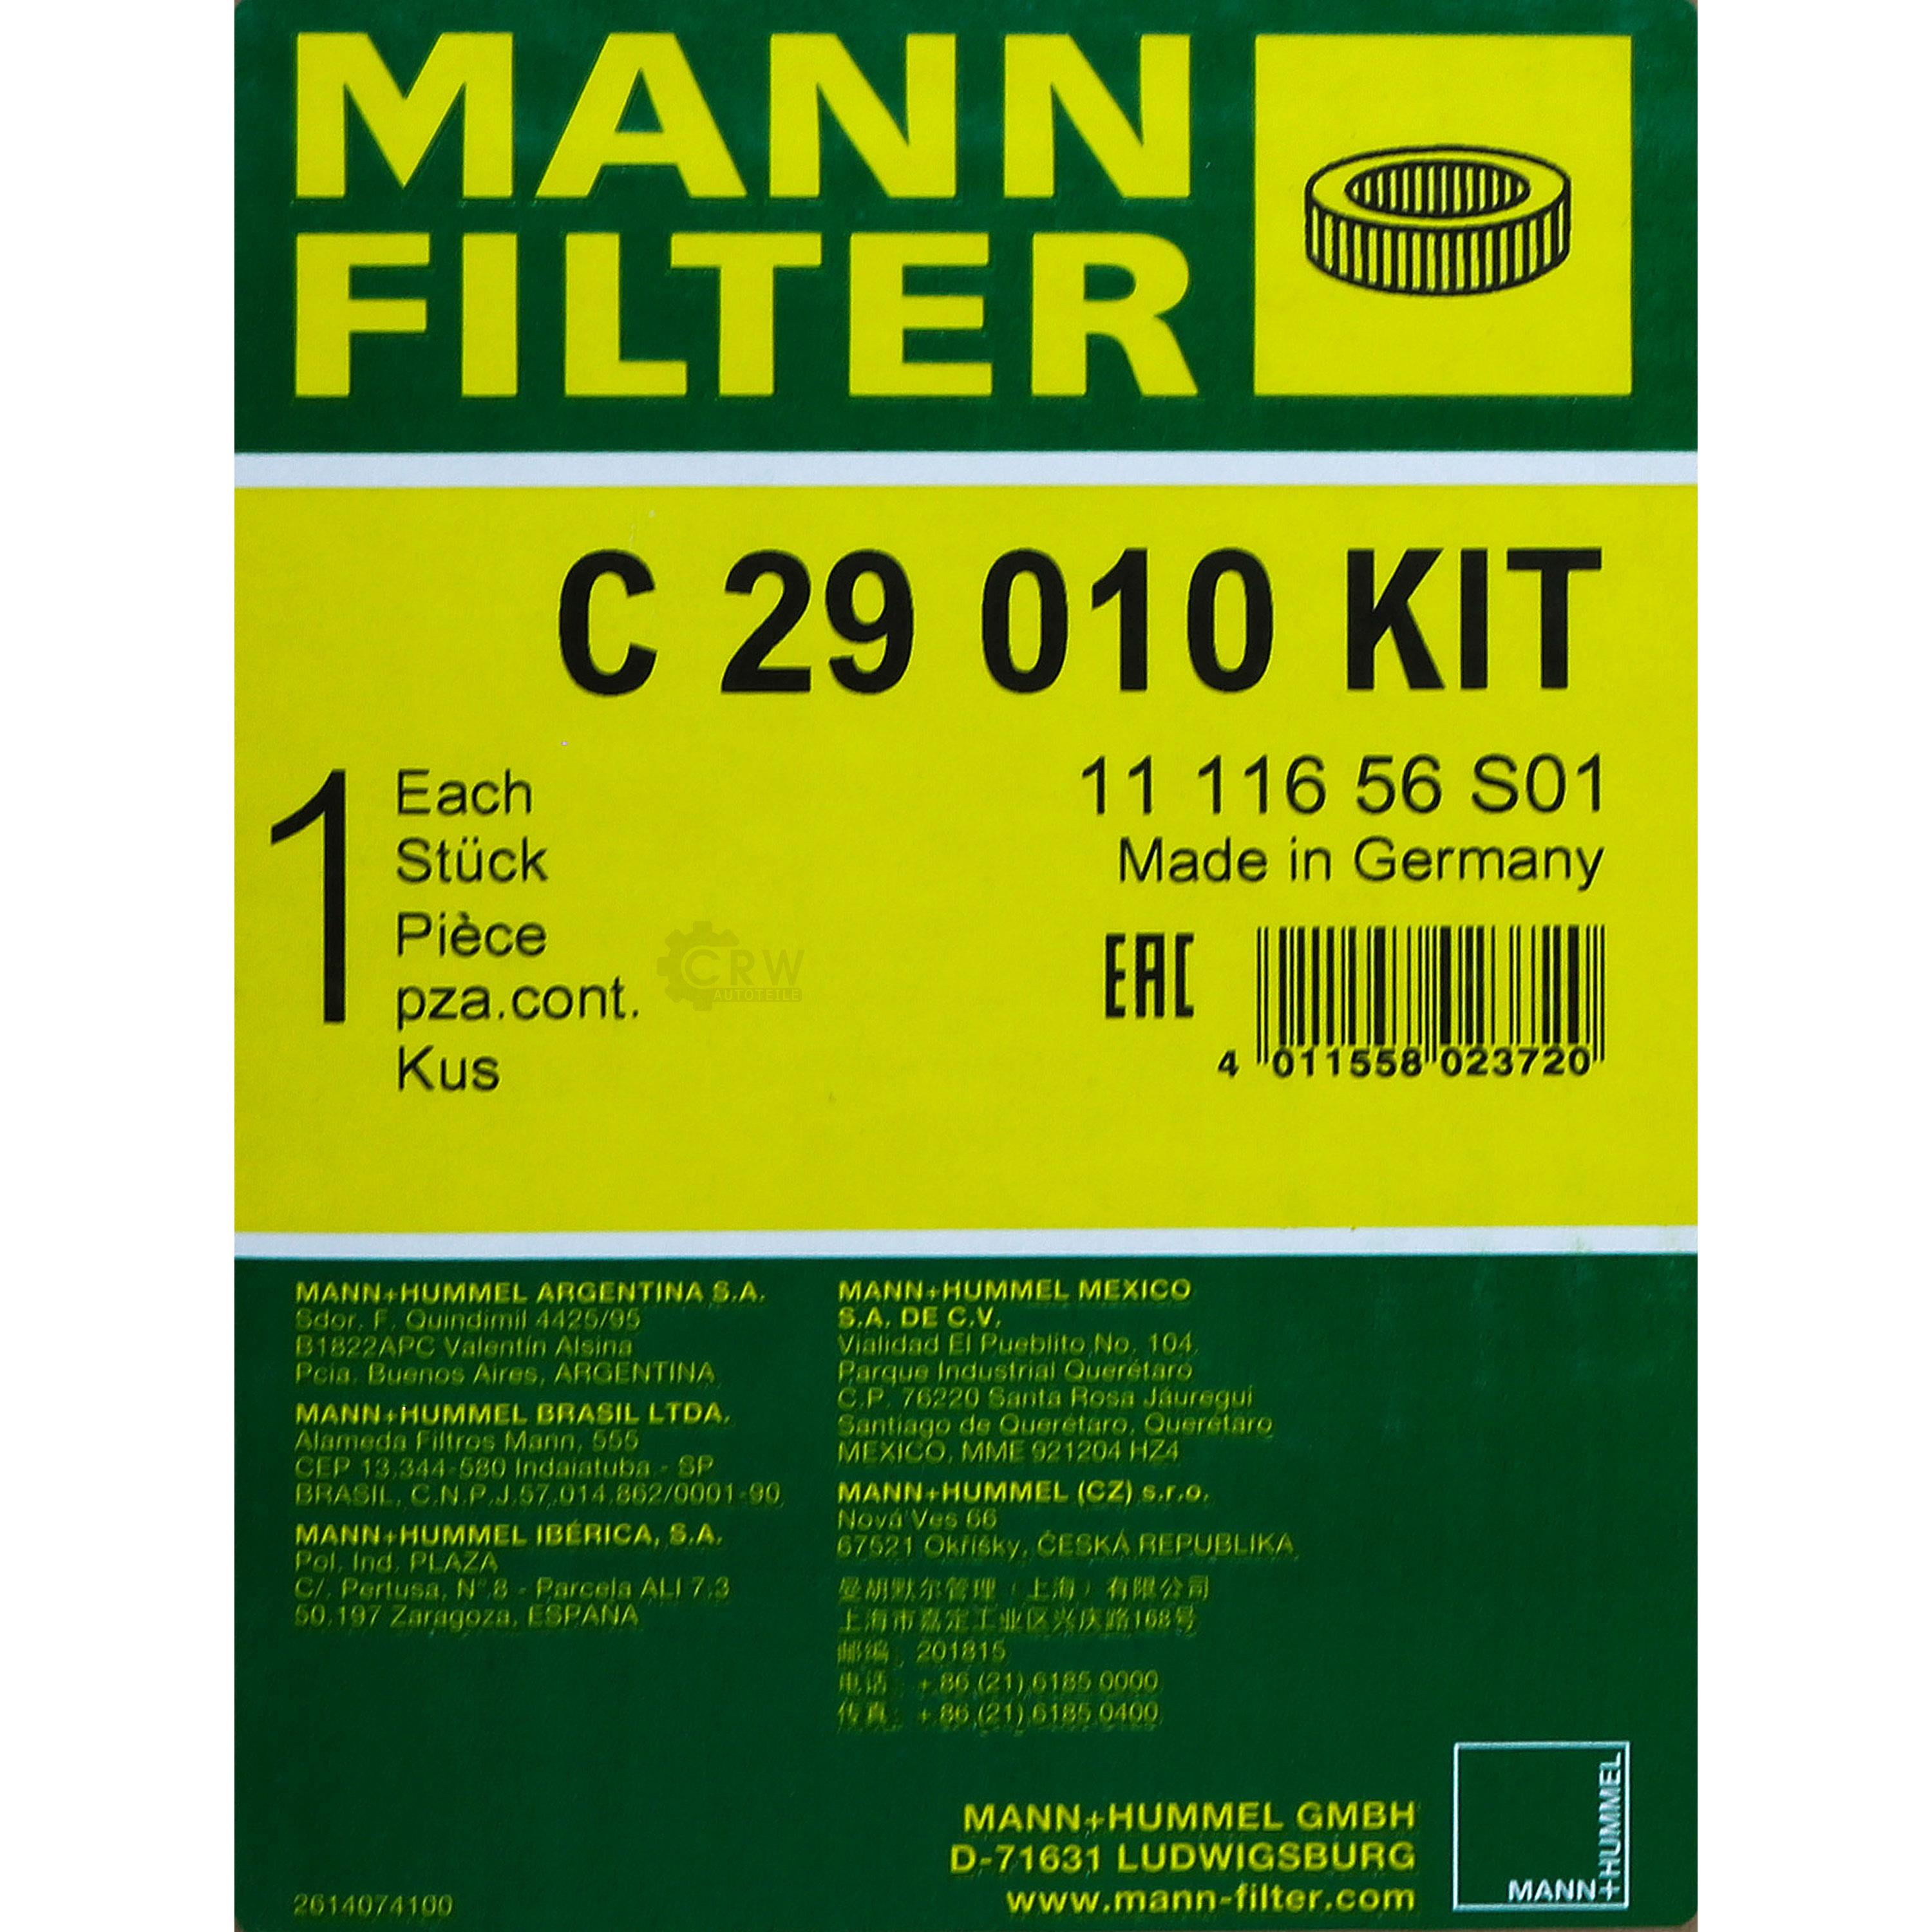 MANN-FILTER Luftfilter C 29 010 KIT